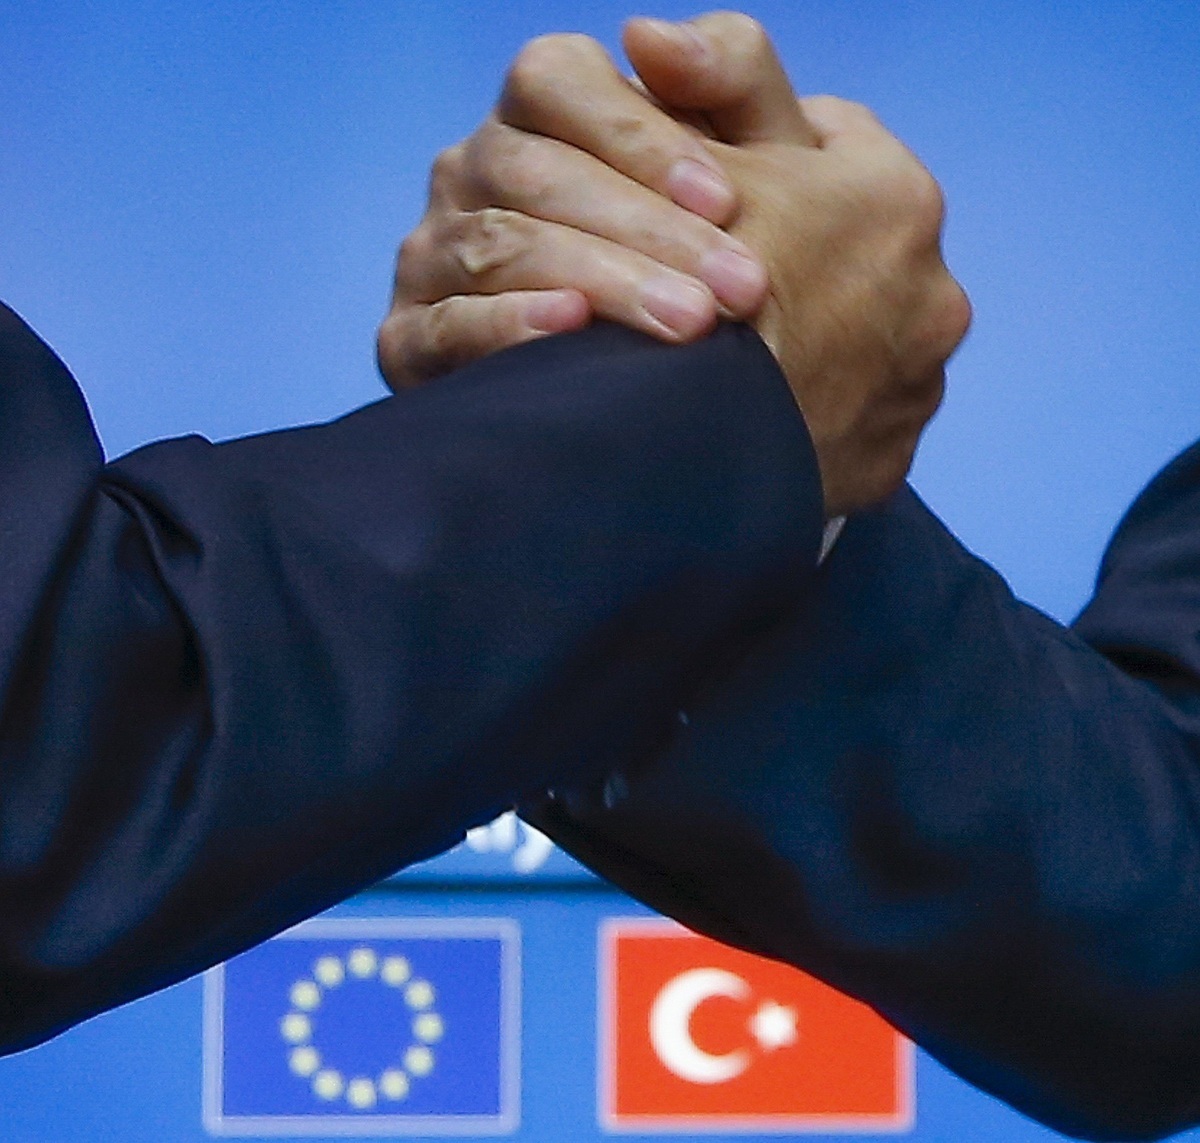 Η Ευρώπη γίνεται… χαλάκι στα πόδια της Τουρκίας – Και λεφτά και συζήτηση για ένταξη!